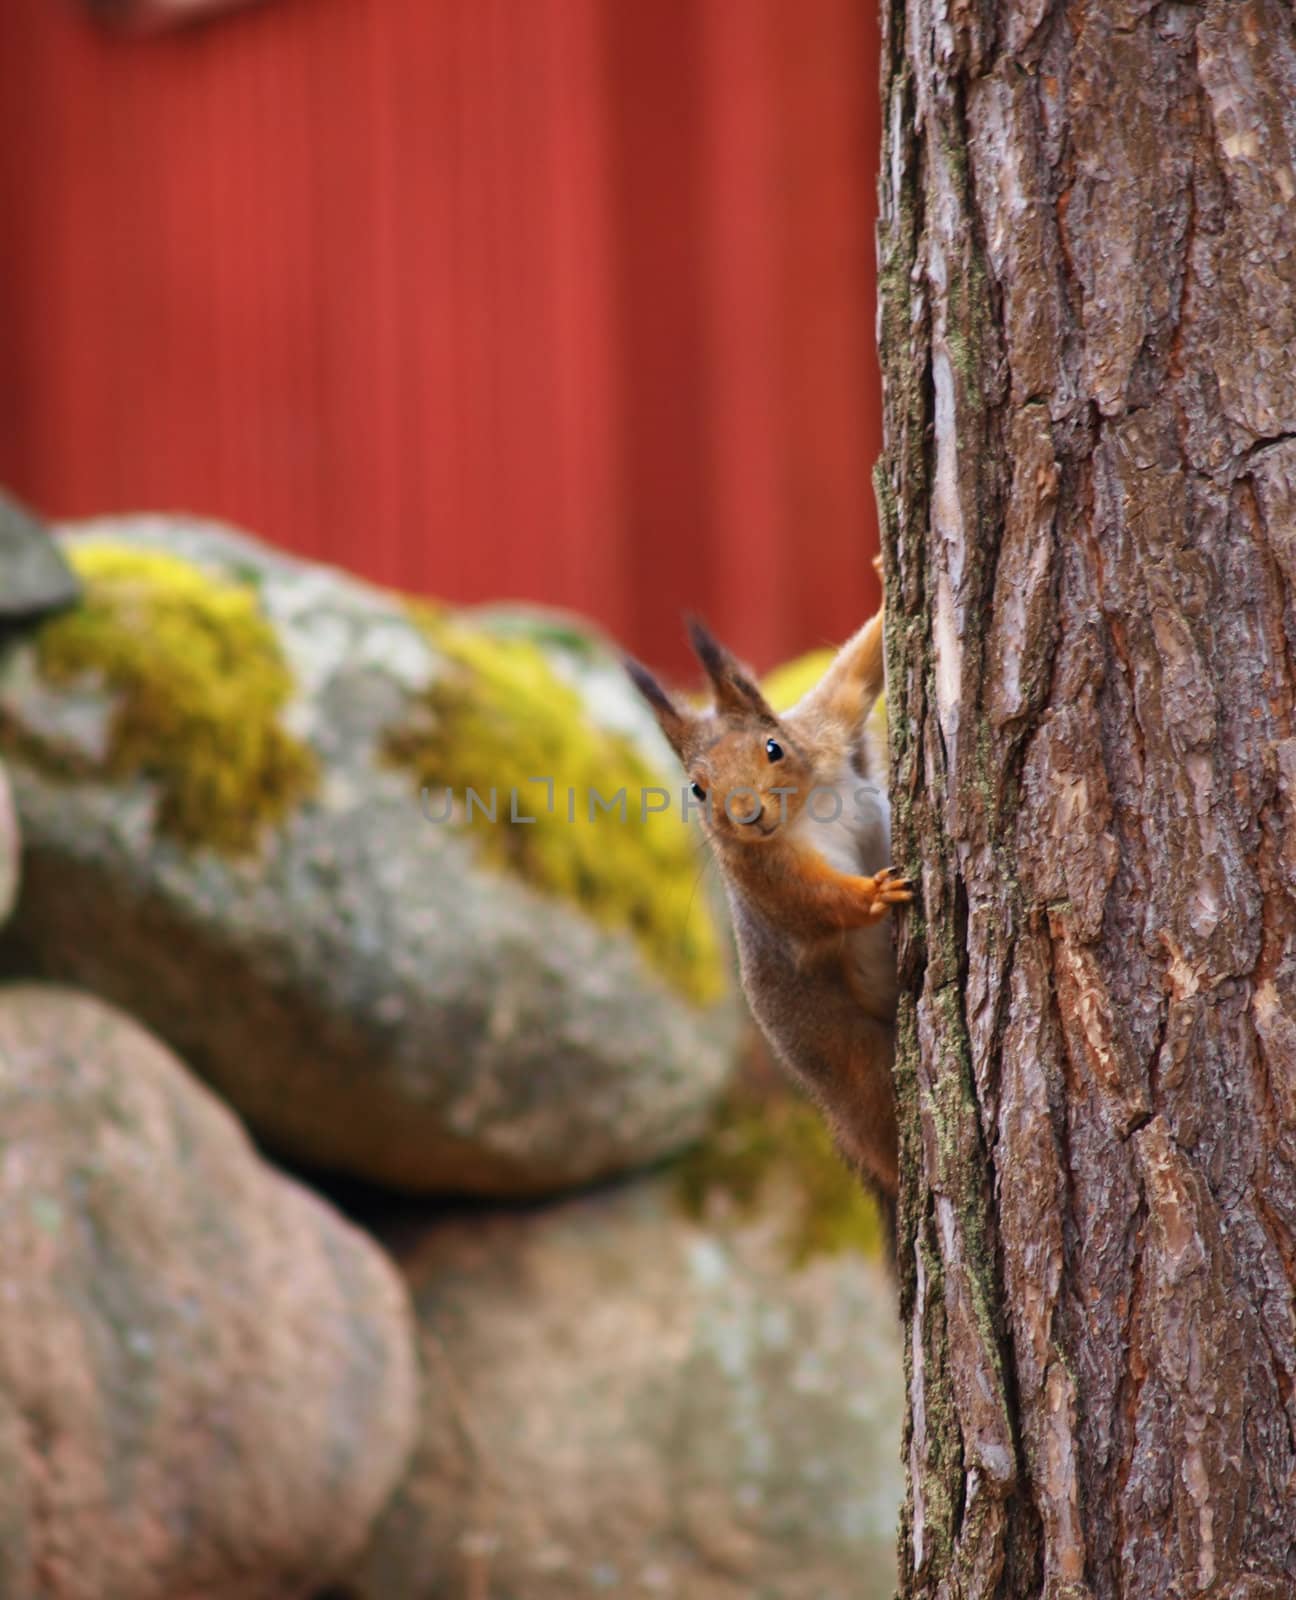 Squirrel by Arvebettum